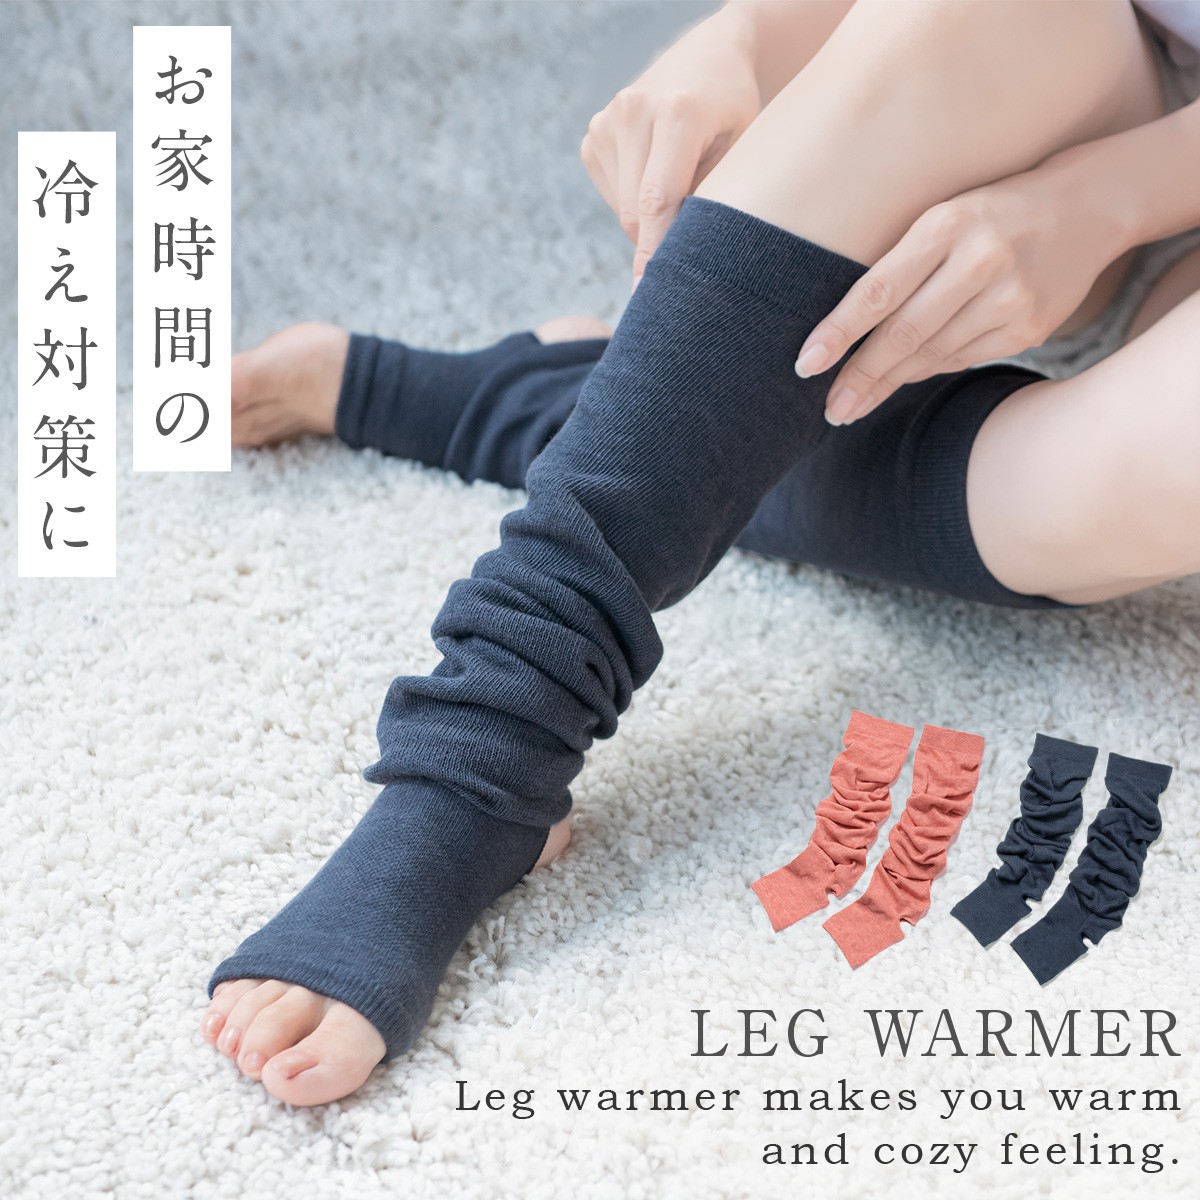 永遠の定番 レッグウォーマー ロング メンズ レディース レイヤード 防寒 冷え性 冷え対策 血行促進 leg warmer